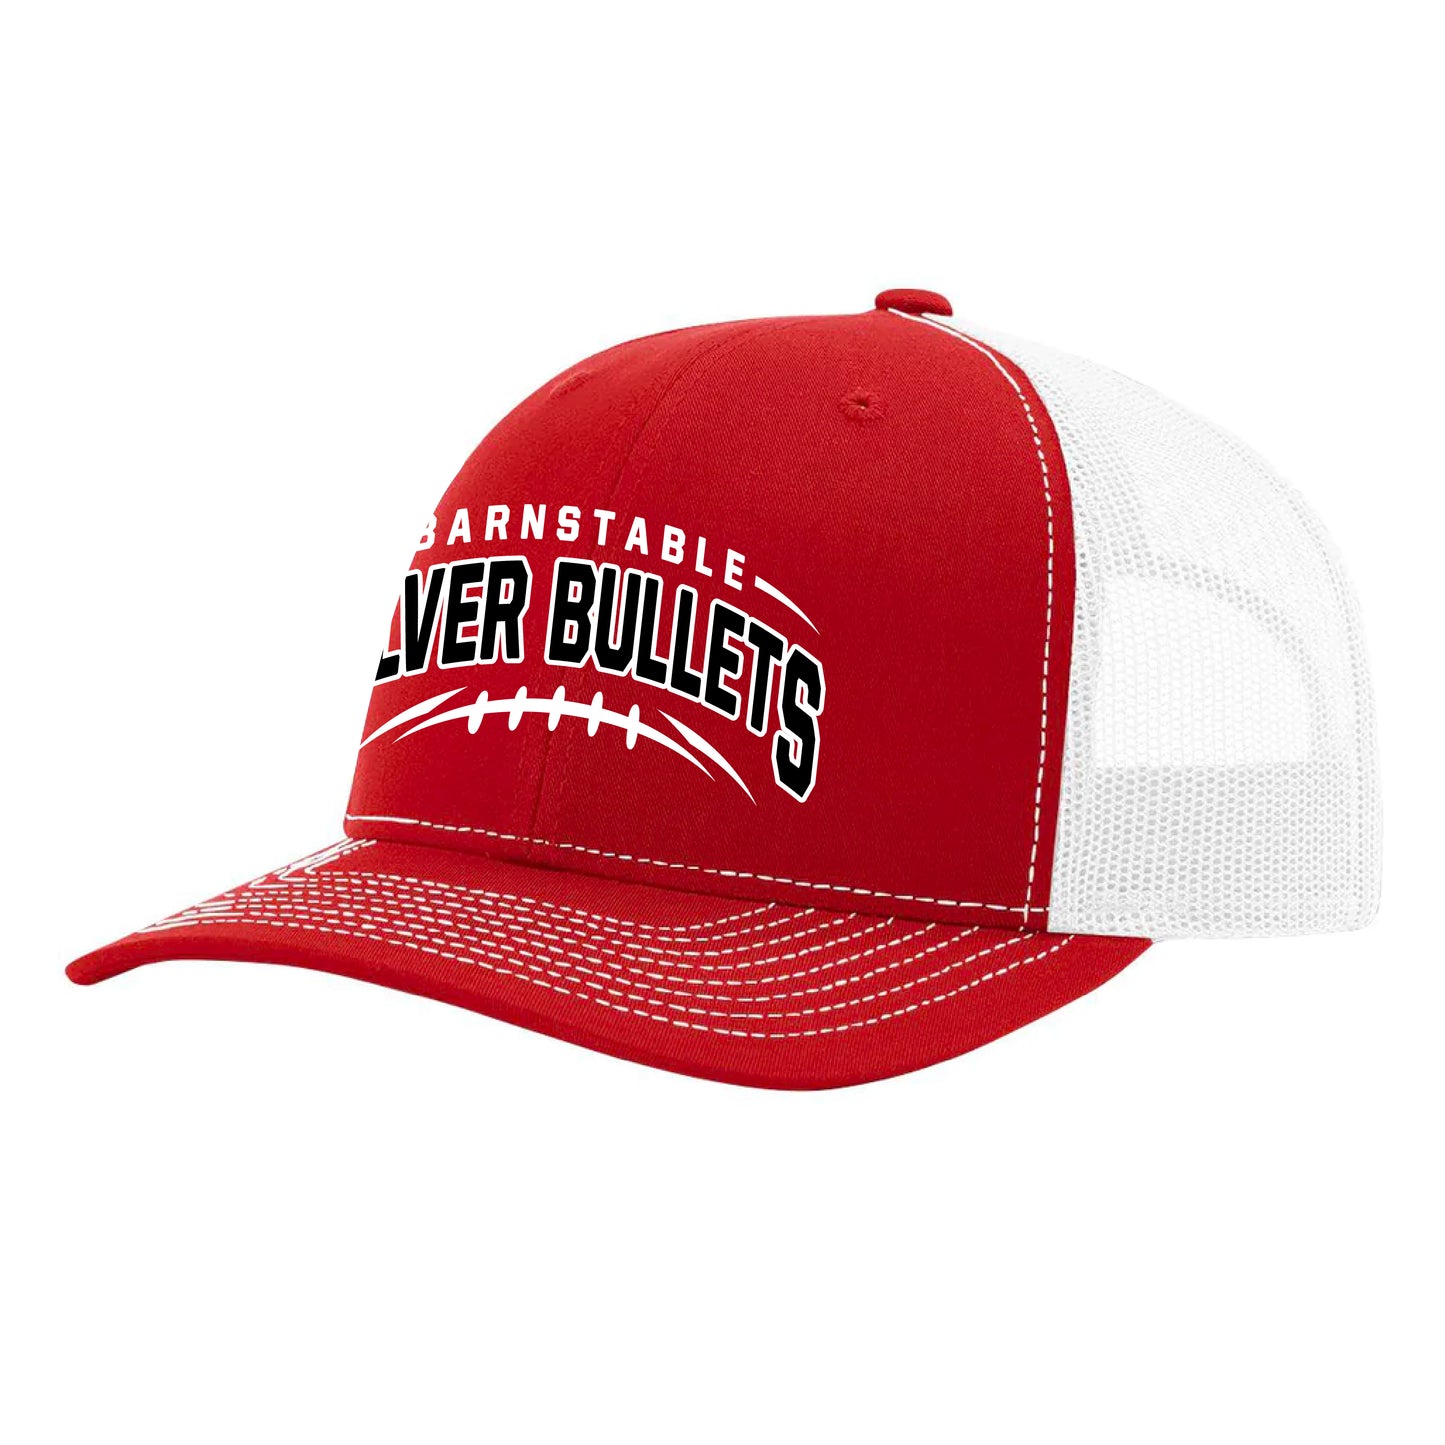 Barnstable Silver Bullets - Trucker Hat